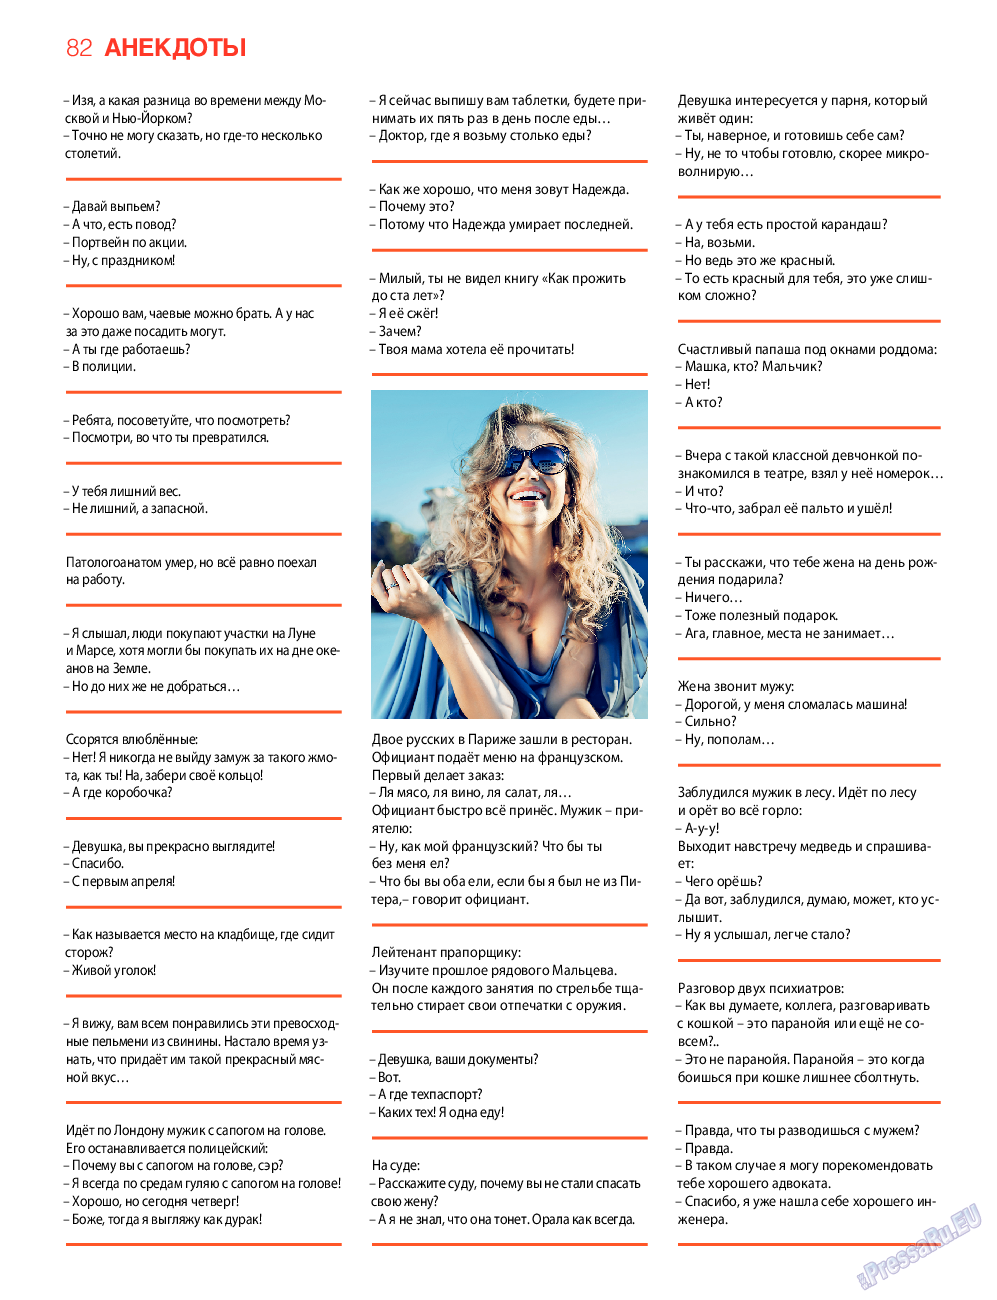 7плюс7я, журнал. 2017 №12 стр.82